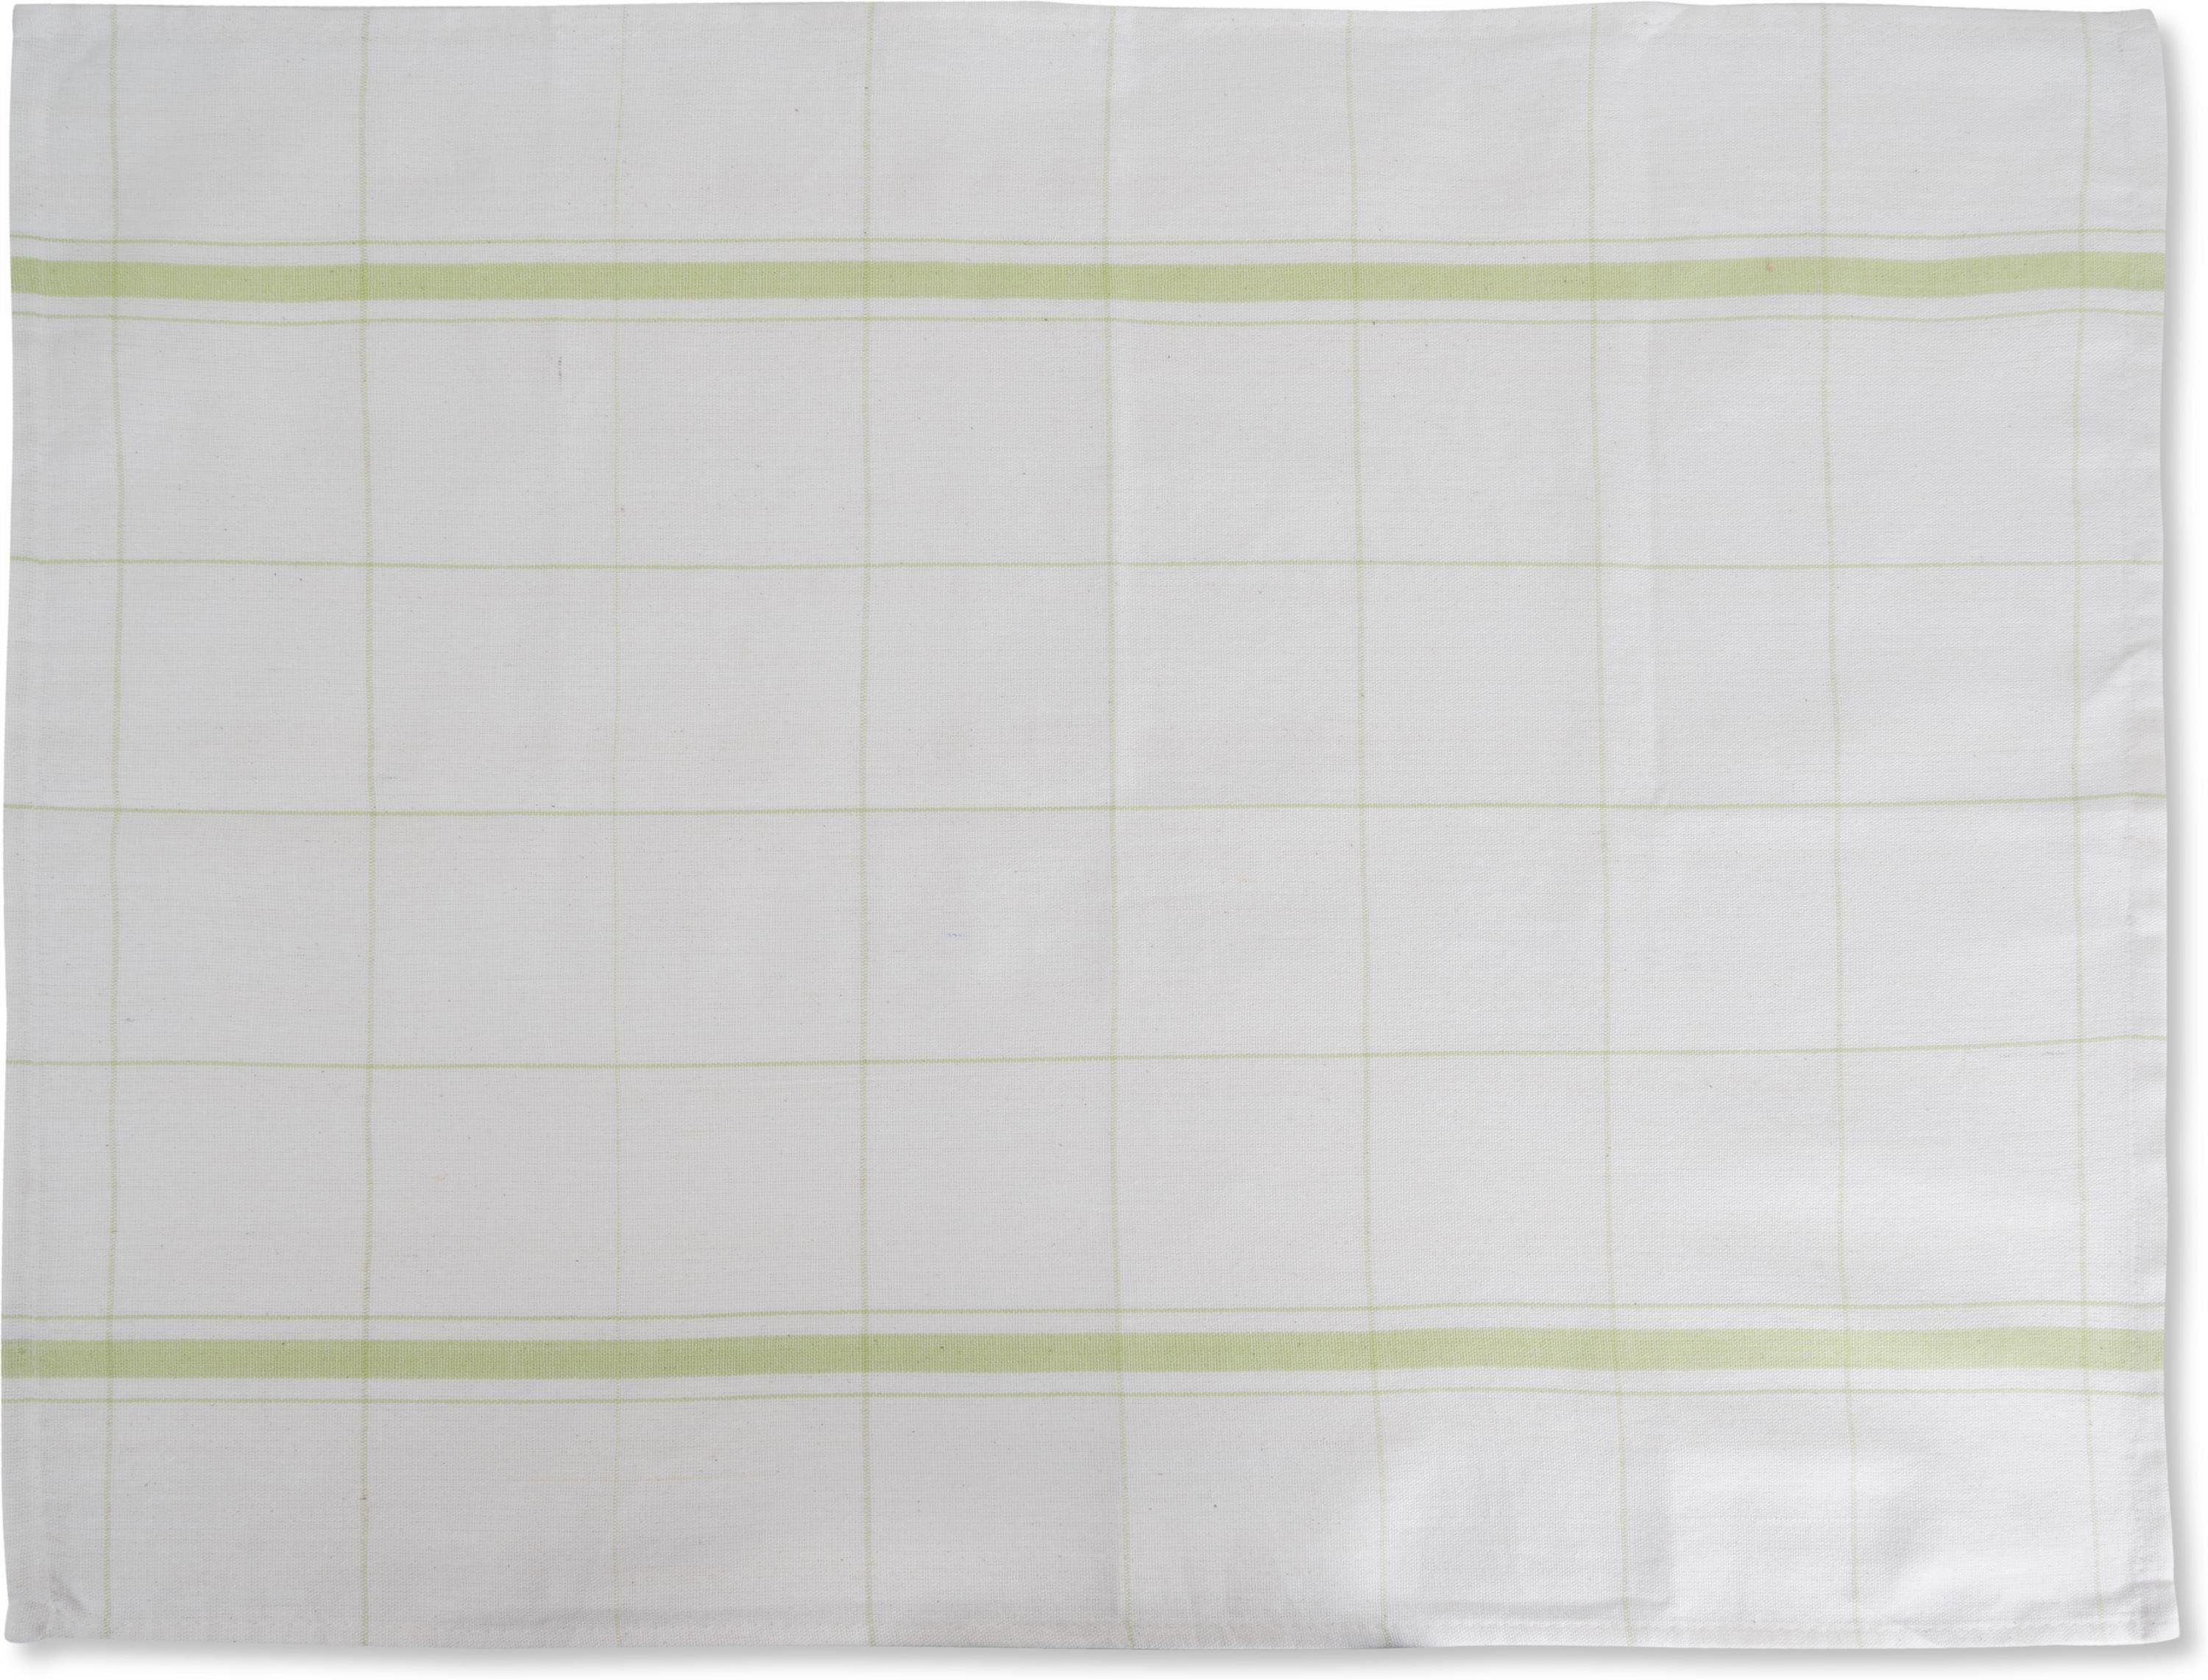 Aspero Geschirrtuch Geschirrtücher kariert Geschirrhandtücher (10er Küchentücher aus Pack), Grün Baumwolle, 100